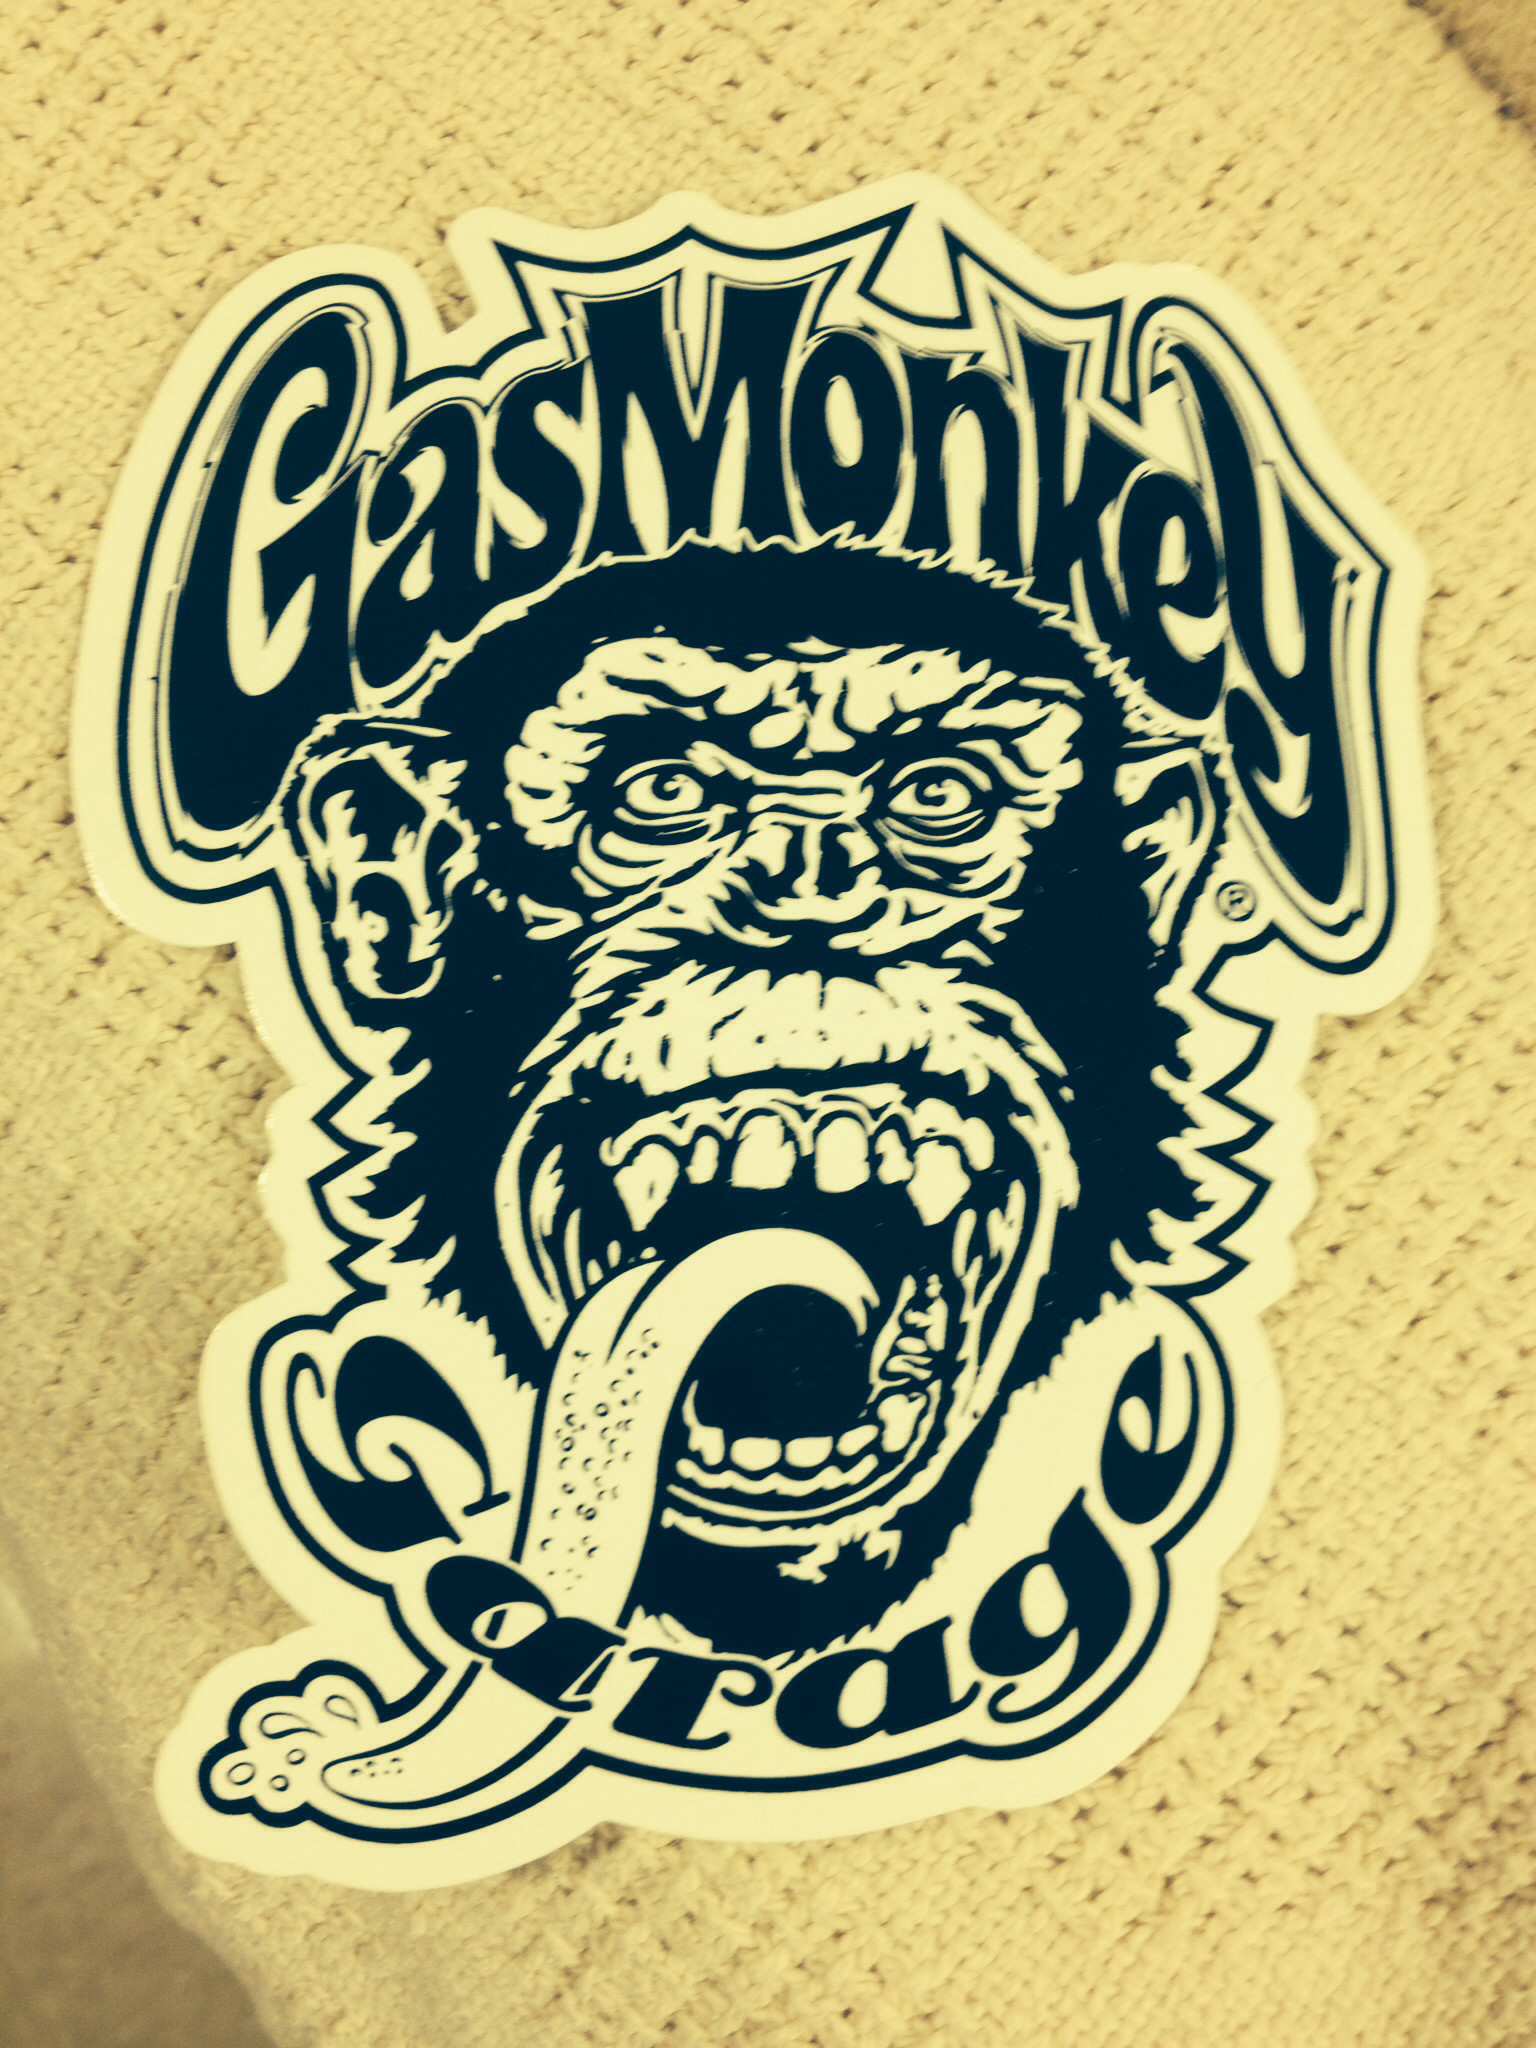 가스 원숭이 벽지,삽화,폰트,티셔츠,대주교,소설 속의 인물